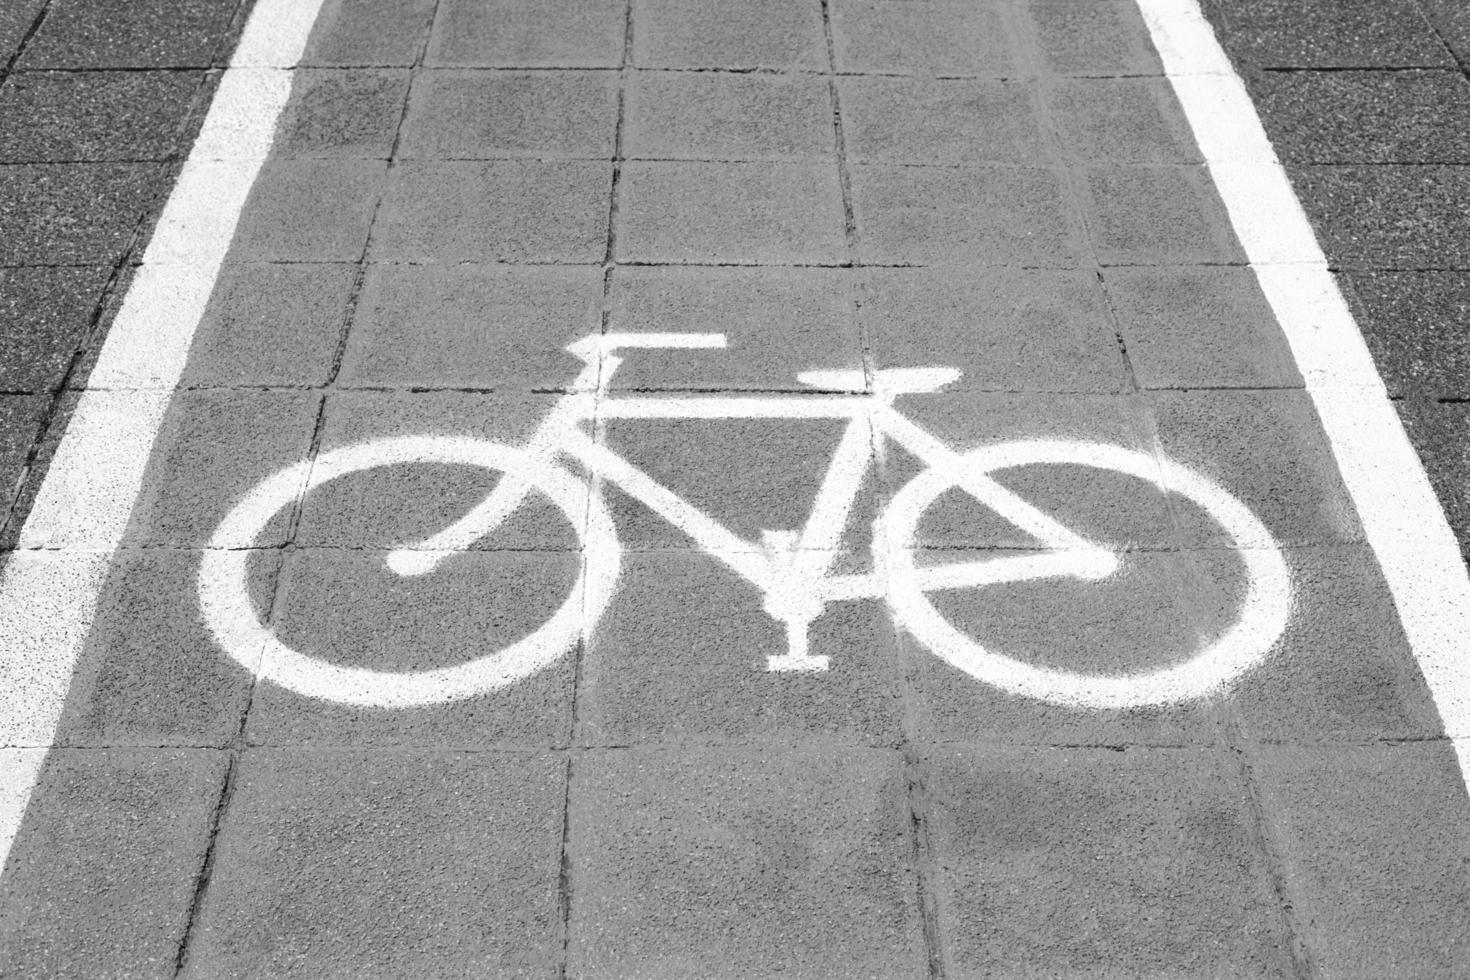 Radweg und weißes Fahrradsymbol foto